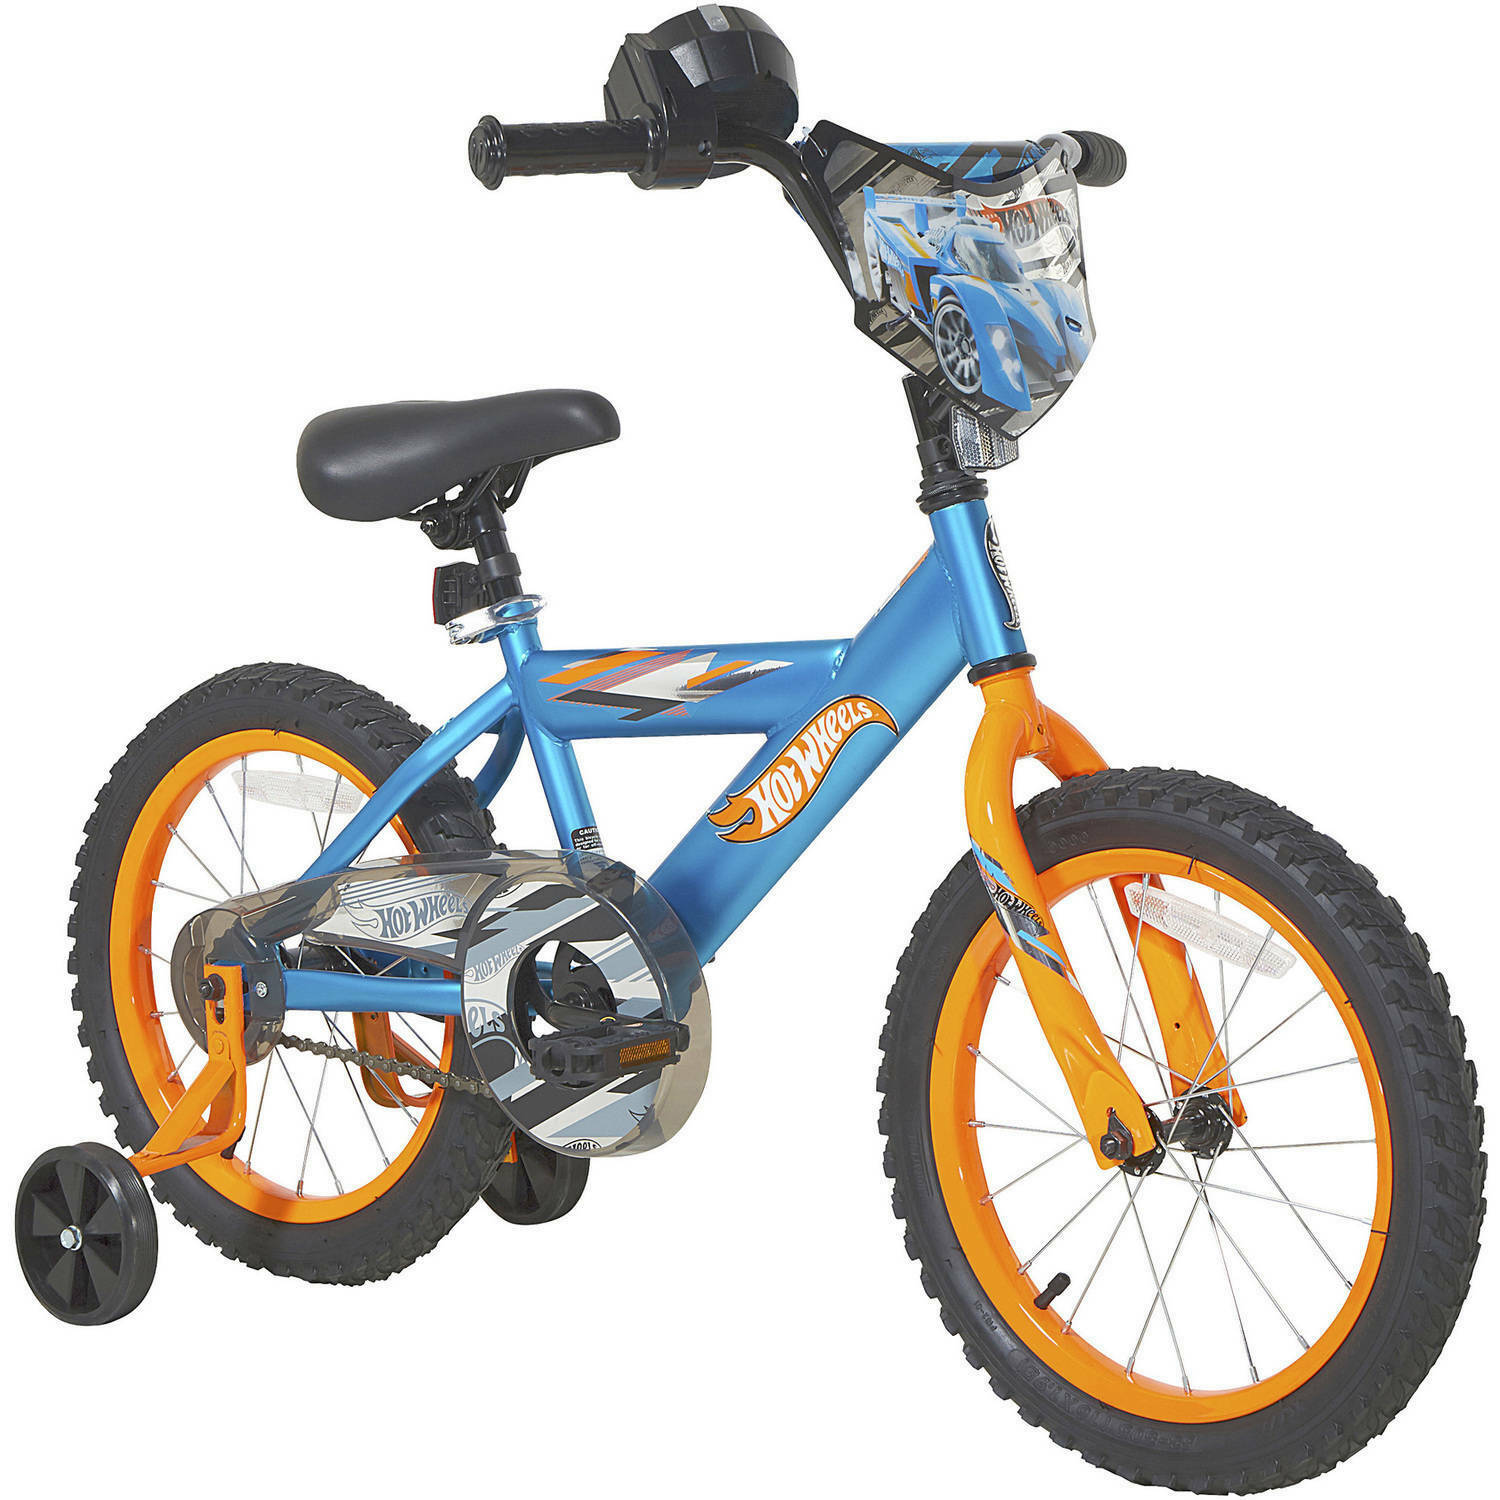 Kids 16" Steel-framed Adjustable Seat Hot Wheels Boy's Bike W/rev Grip, Blue New